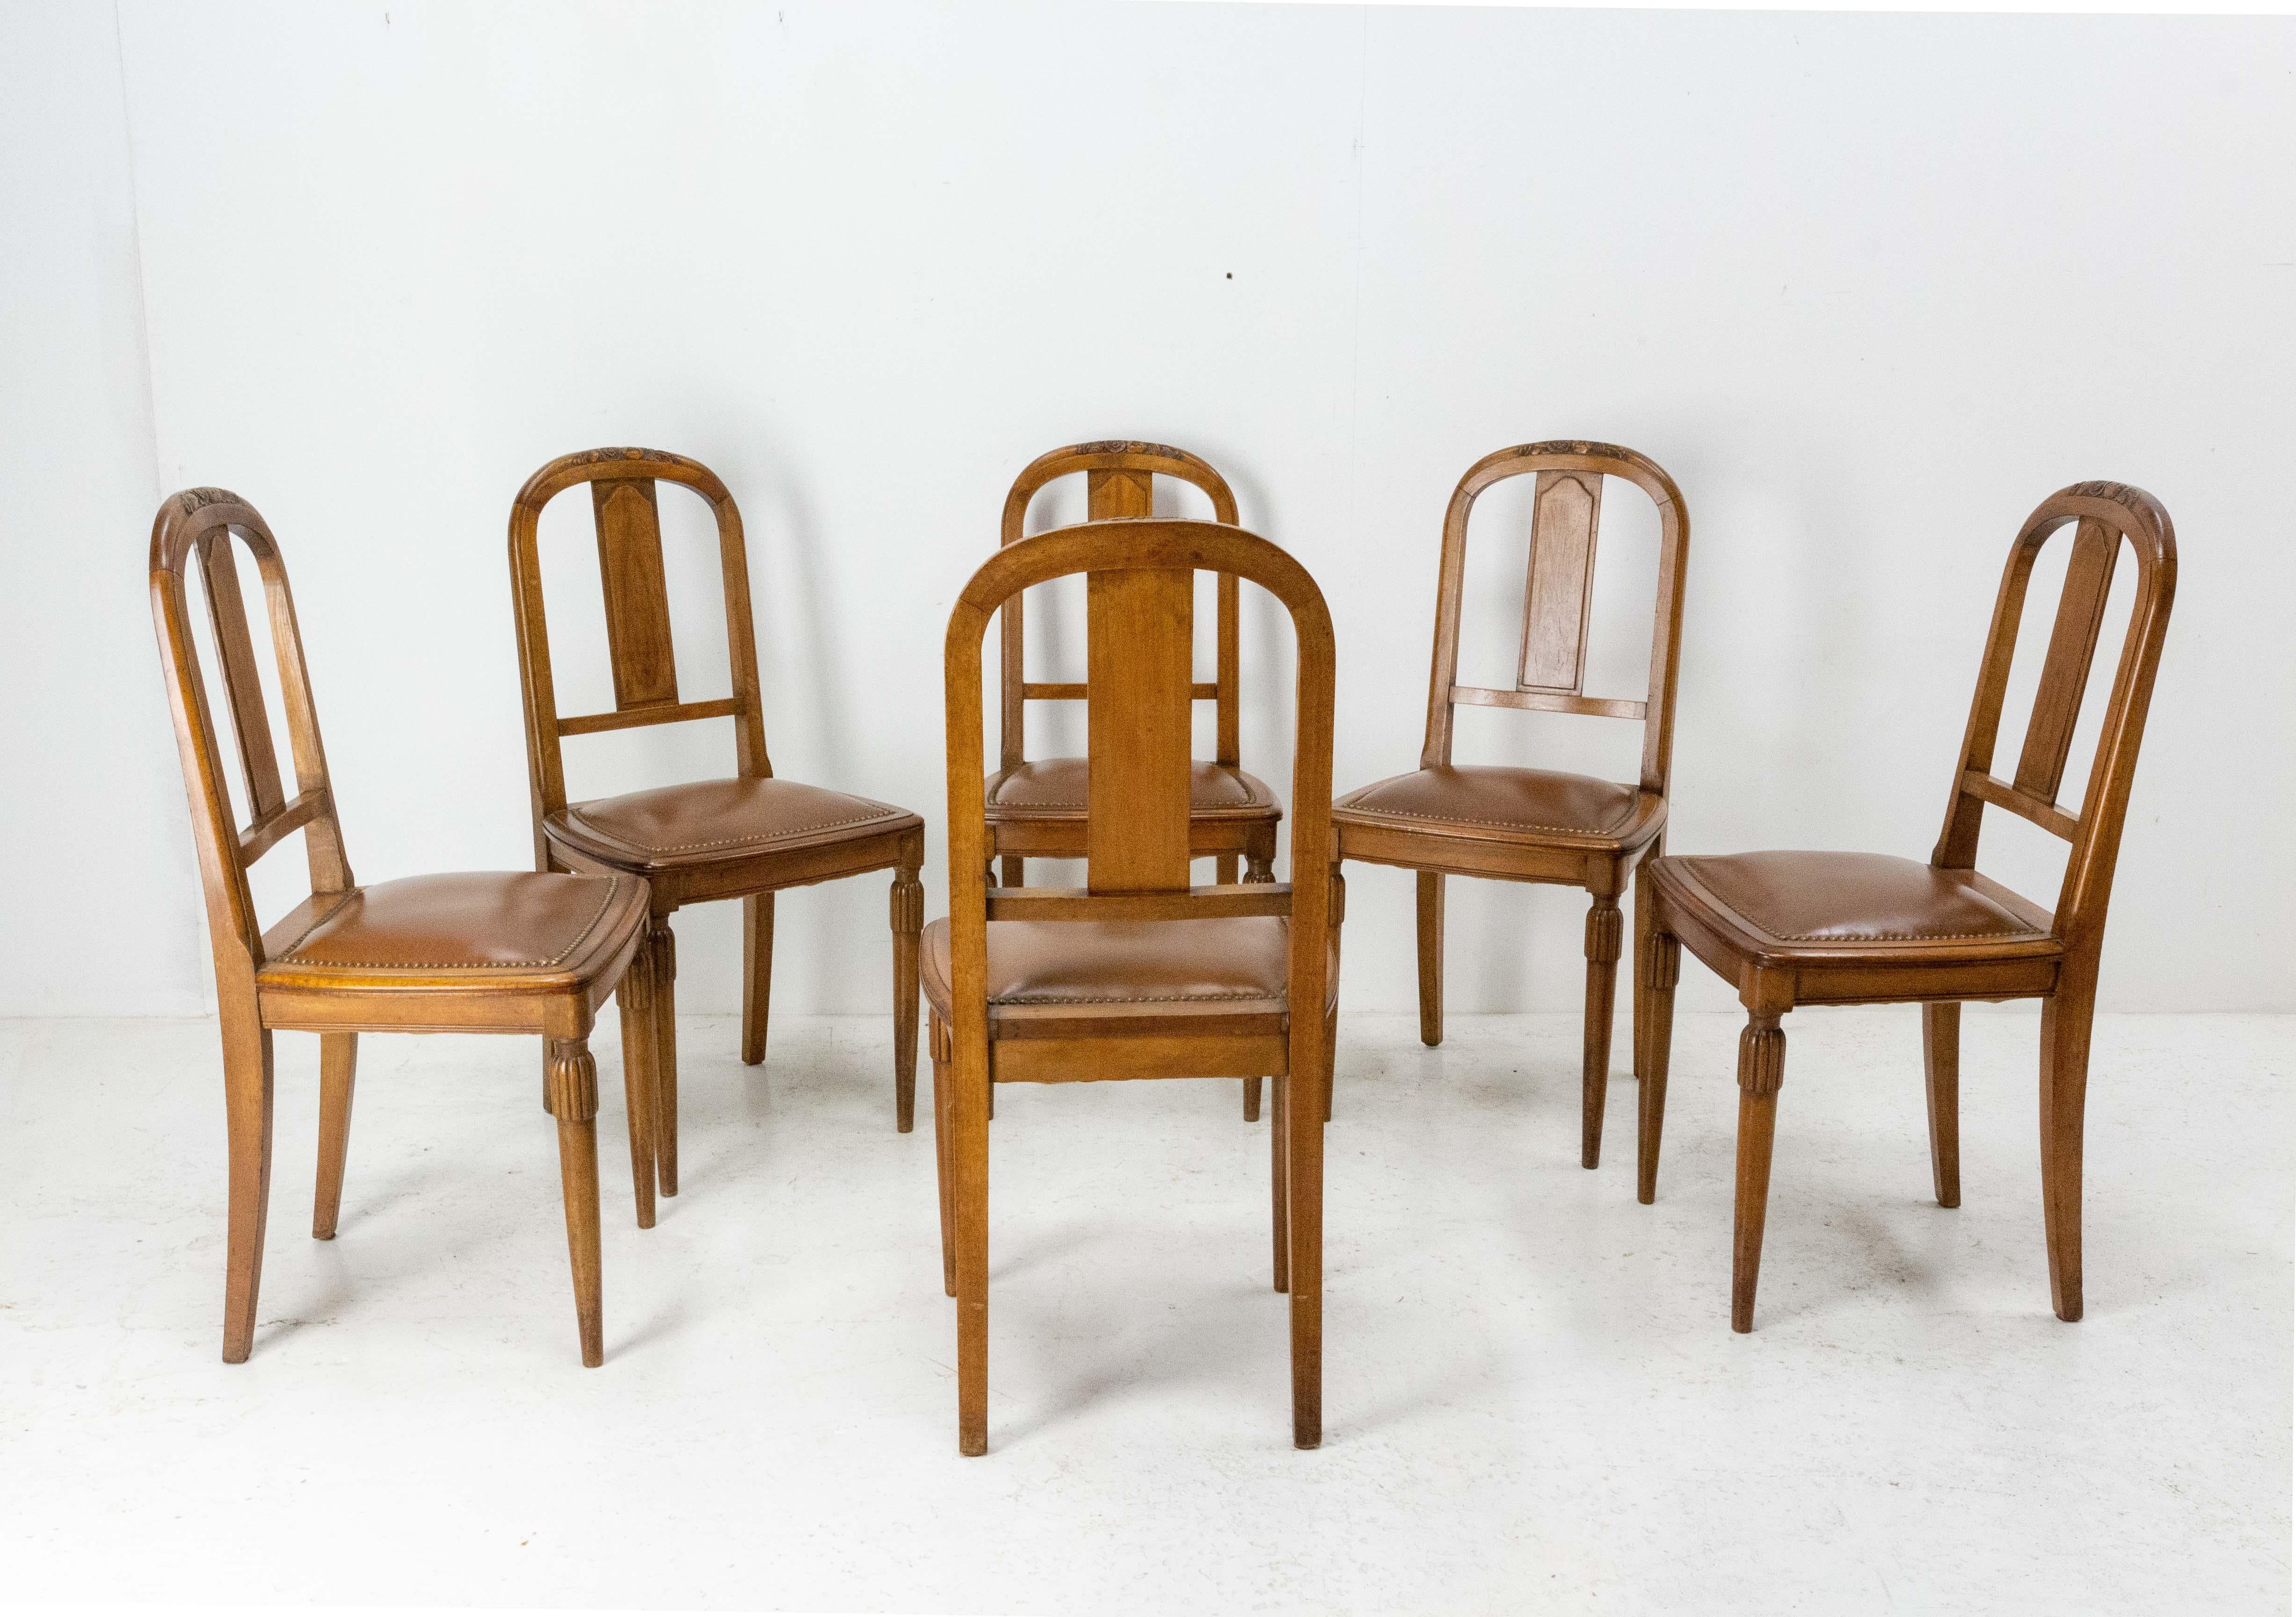 Ensemble de six chaises de salle à manger Art déco françaises, vers 1930.
A utiliser tel quel si l'on souhaite conserver la patine ou restaurer.
le noyer et le skaï.
Sobre et chic avec un motif floral au dos.
État d'origine antique.
Les cadres